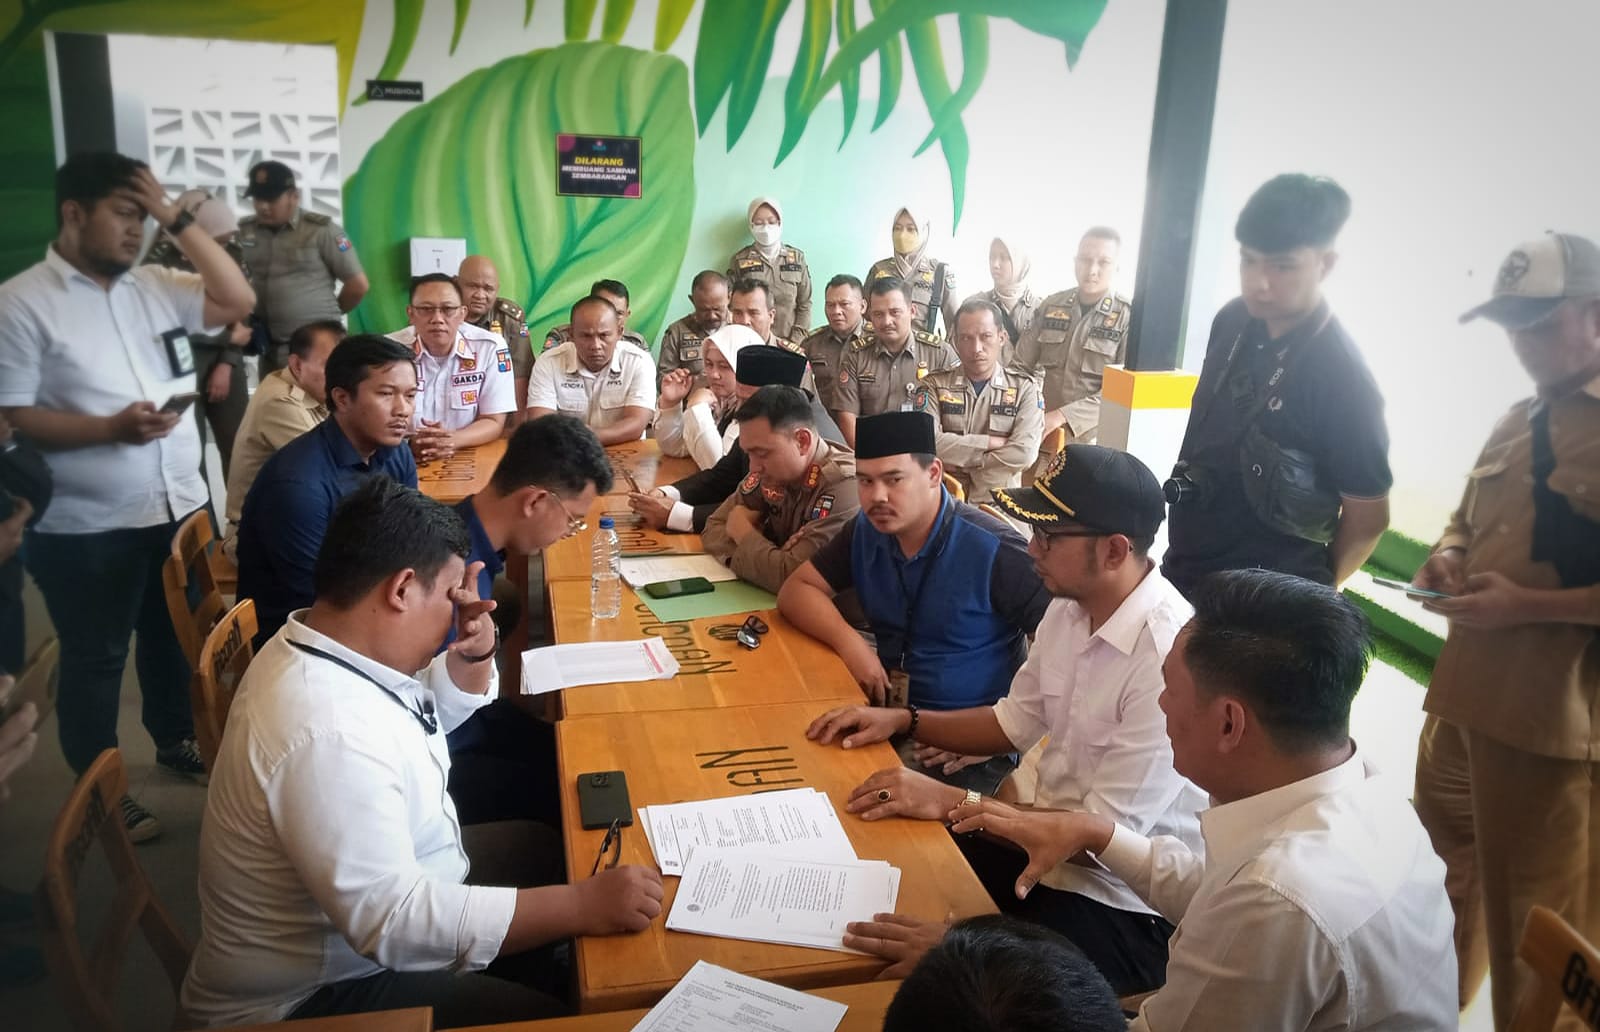 Waduh, Komisi I Ungkap Seluruh Gerai Mie Gacoan di Kota Bogor Tak Miliki Izin PBG / Yudha Prananda